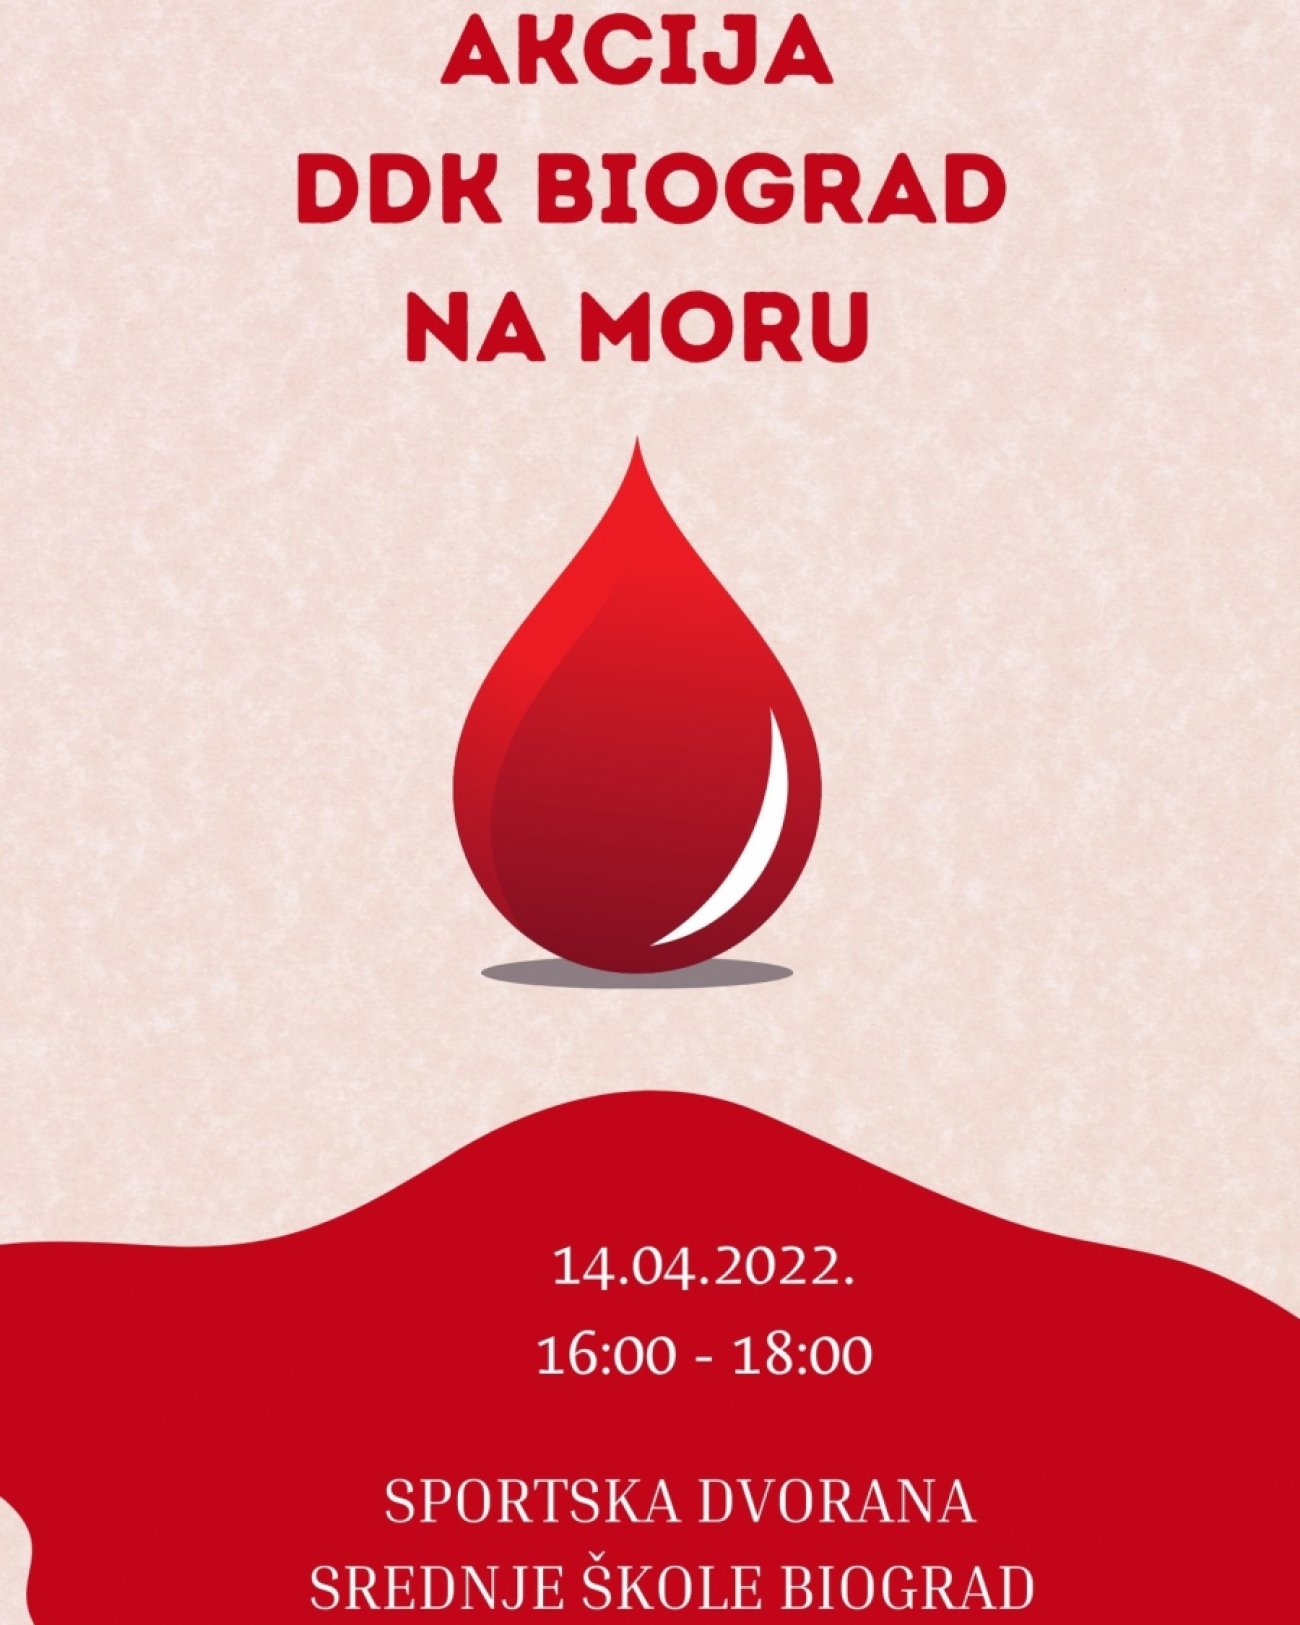 Najava akcije dobrovoljnog darivanja krvi aktiva Biograd na Moru - 14.04.2022.